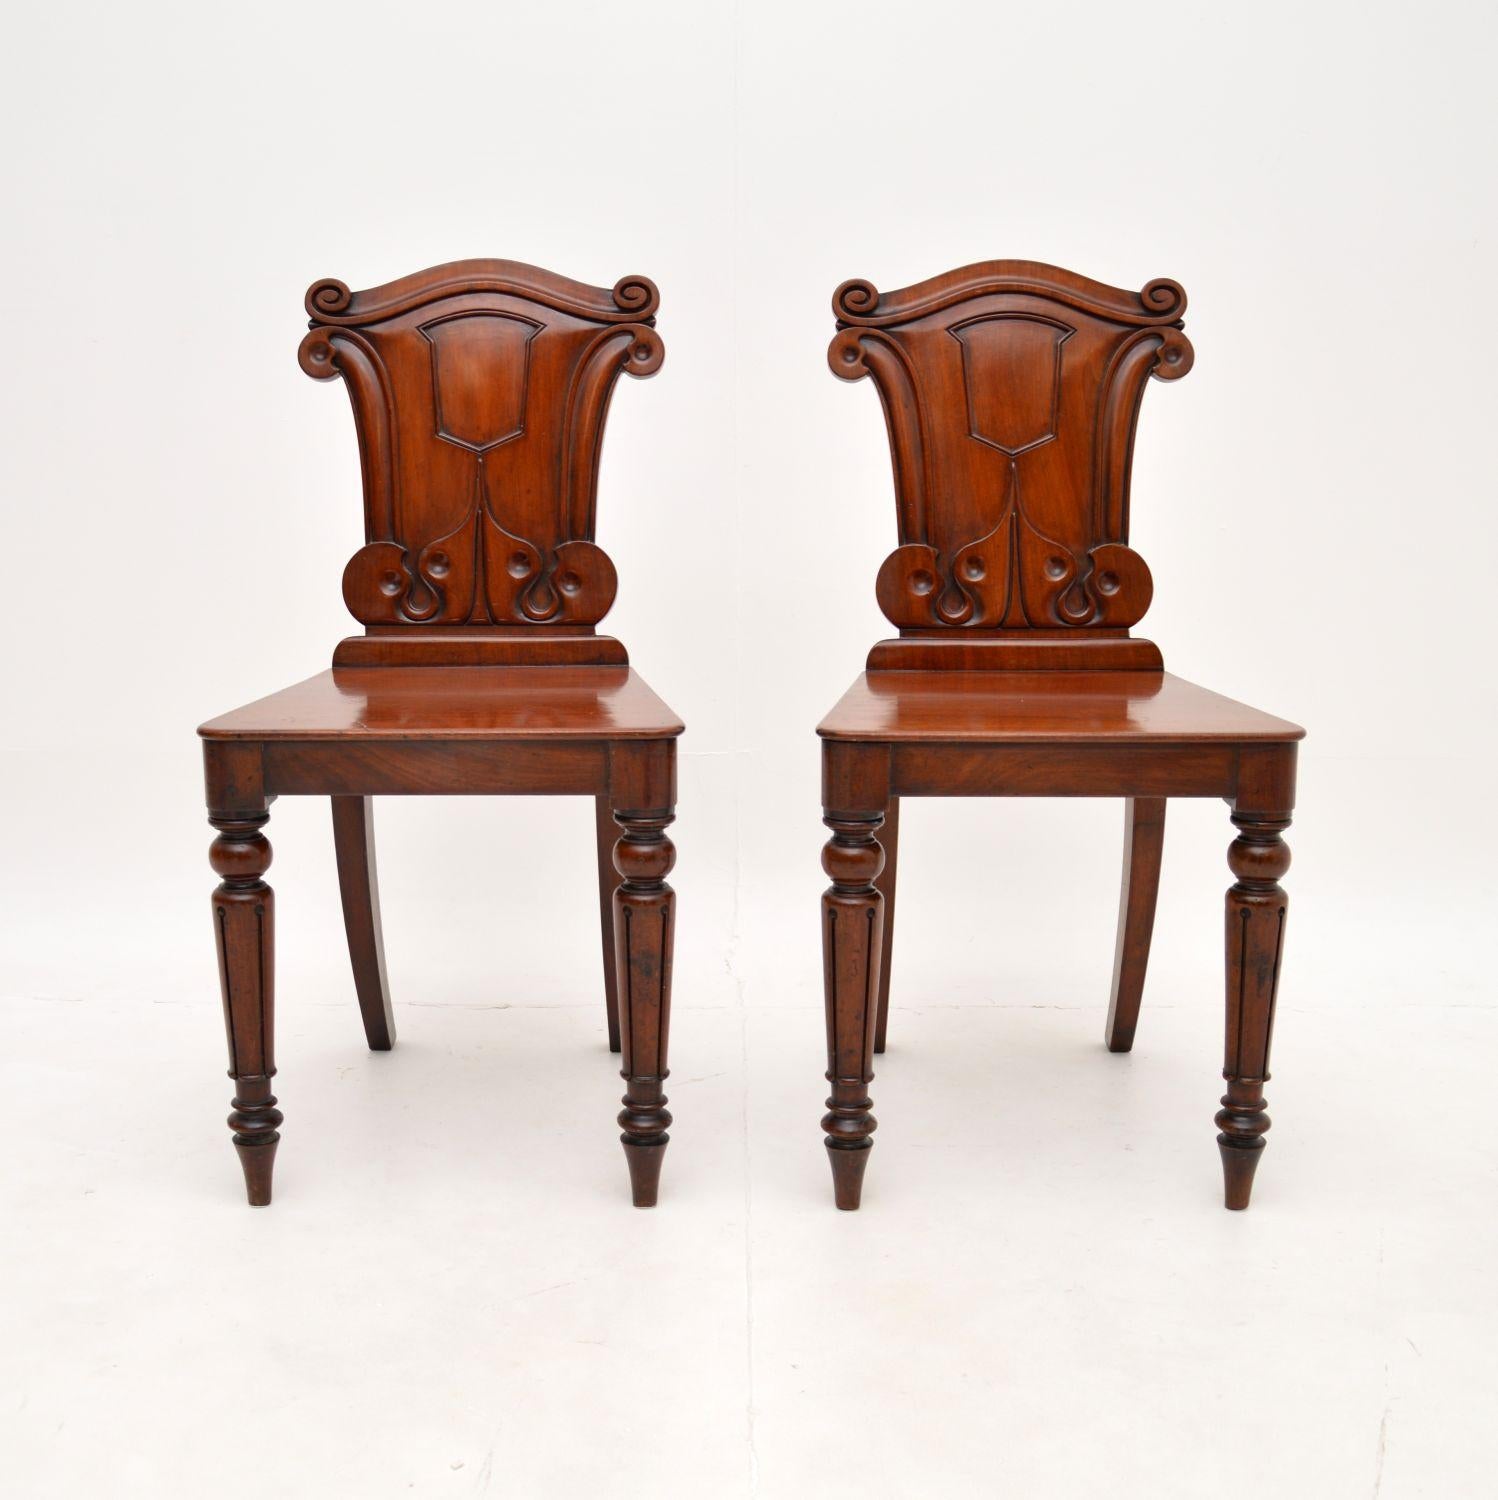 Une belle paire de chaises de salle William IV antiques. Fabriqués en Angleterre, ils datent de la période 1830-1840.

La qualité est exceptionnelle, ils sont magnifiquement construits en bois massif avec un design magnifique et de merveilleuses